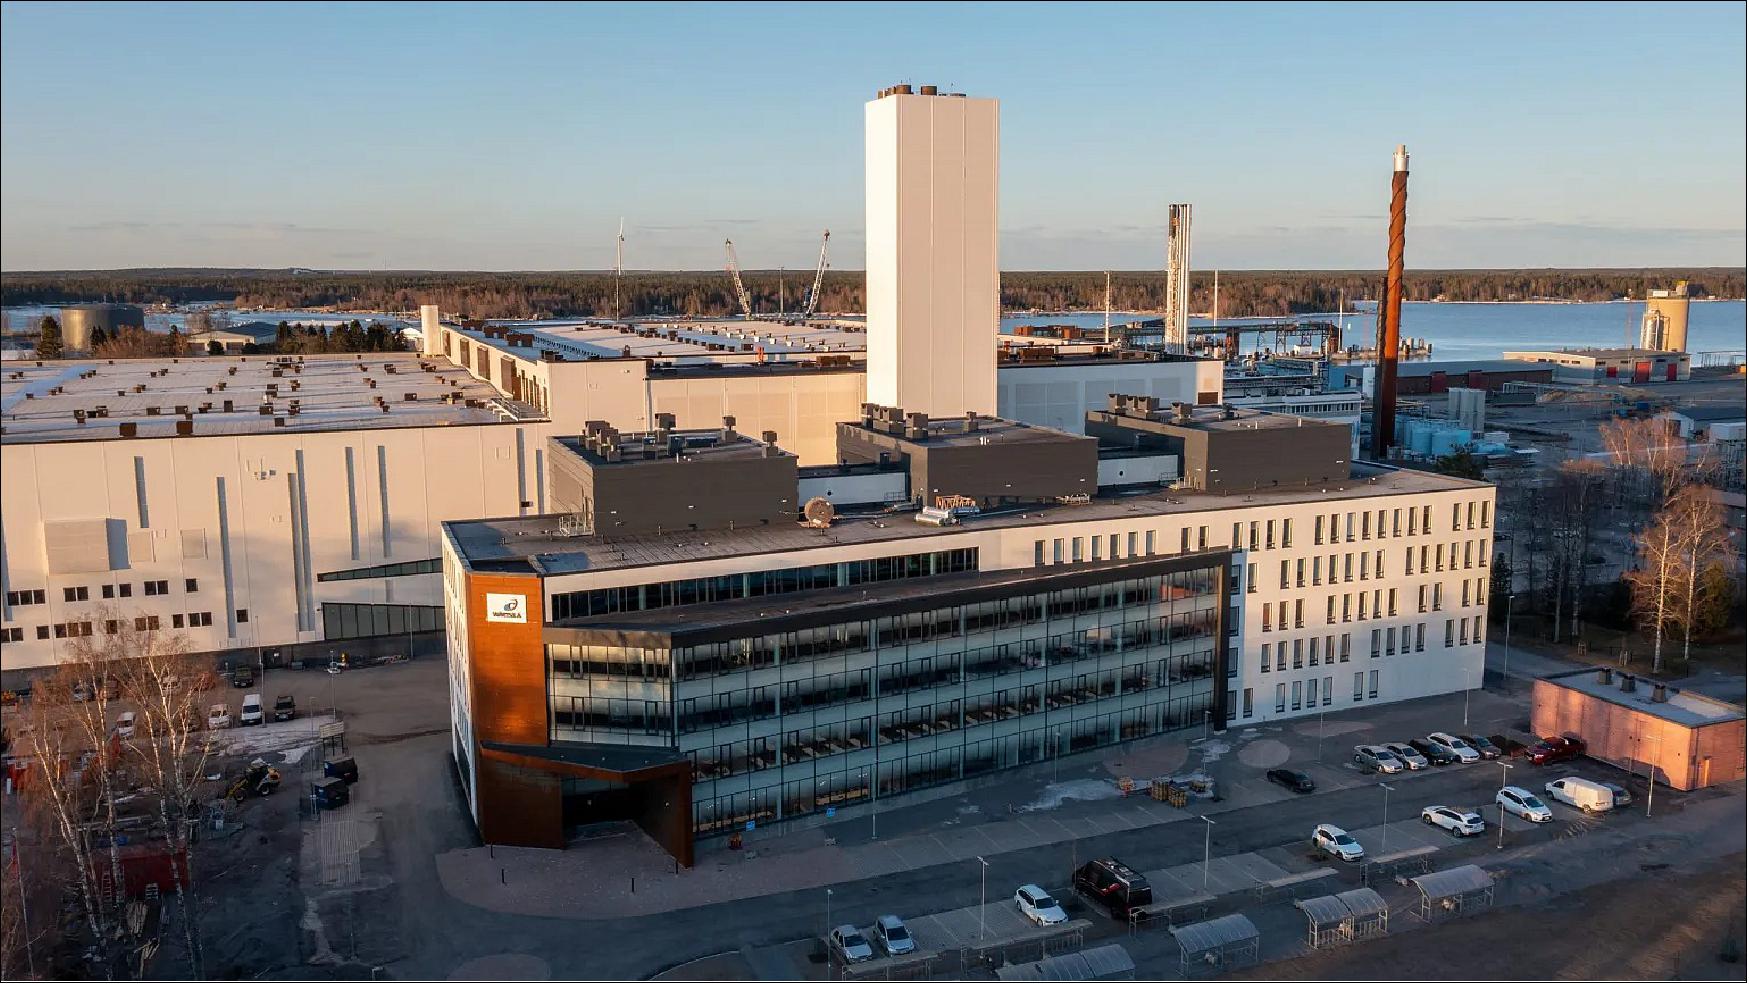 Figure 30: Aerial image of the STH office building (image credit: Wärtsilä)